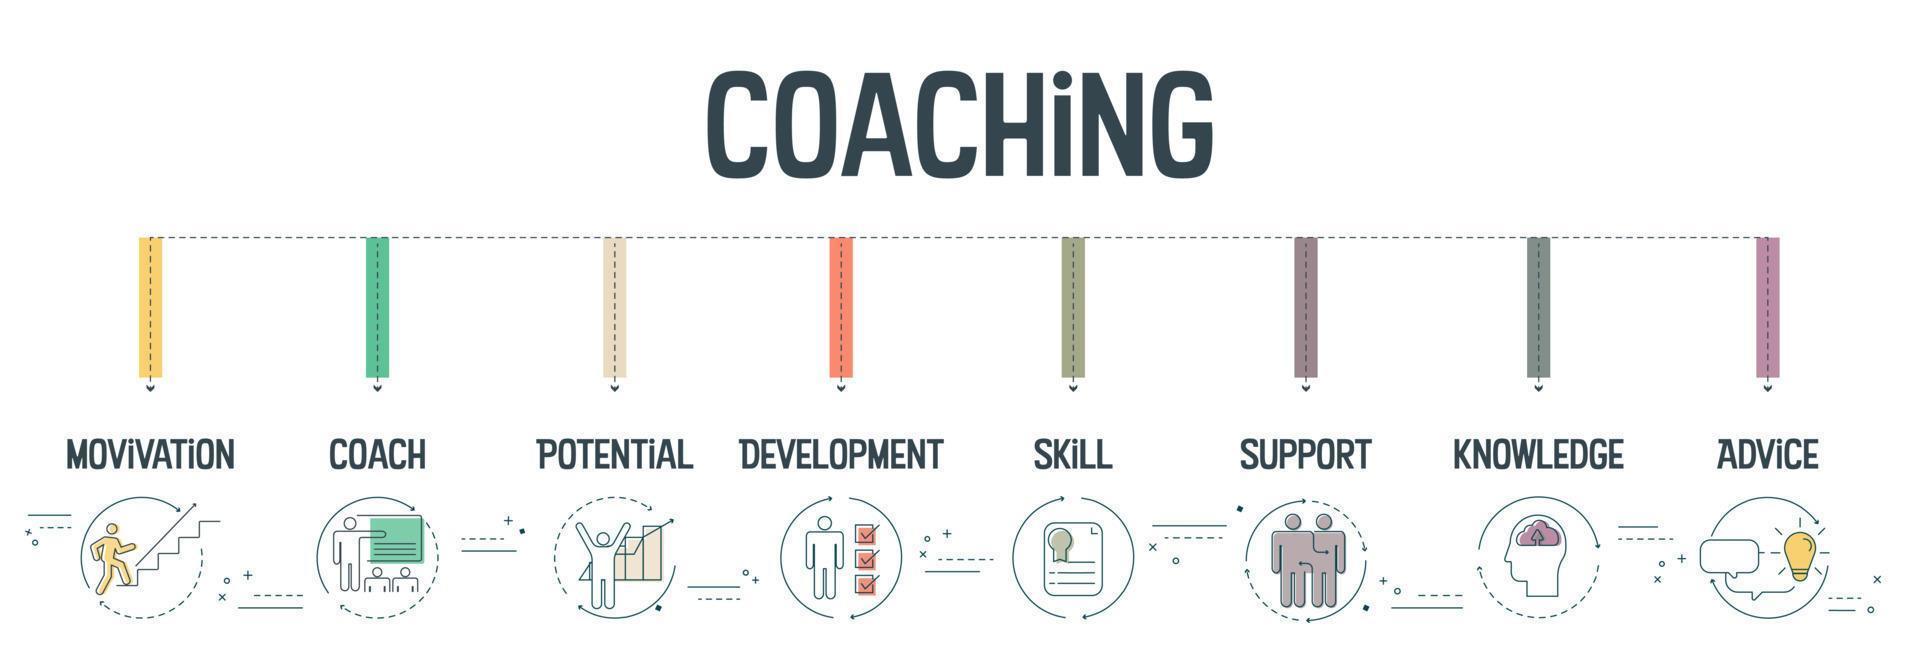 Le concept de bannière de coaching comporte 8 étapes à analyser telles que la motivation, l'entraîneur, le potentiel, le développement, les compétences, le soutien, les connaissances et les conseils. Infographie commerciale pour la présentation de diapositives ou la bannière Web. vecteur. vecteur